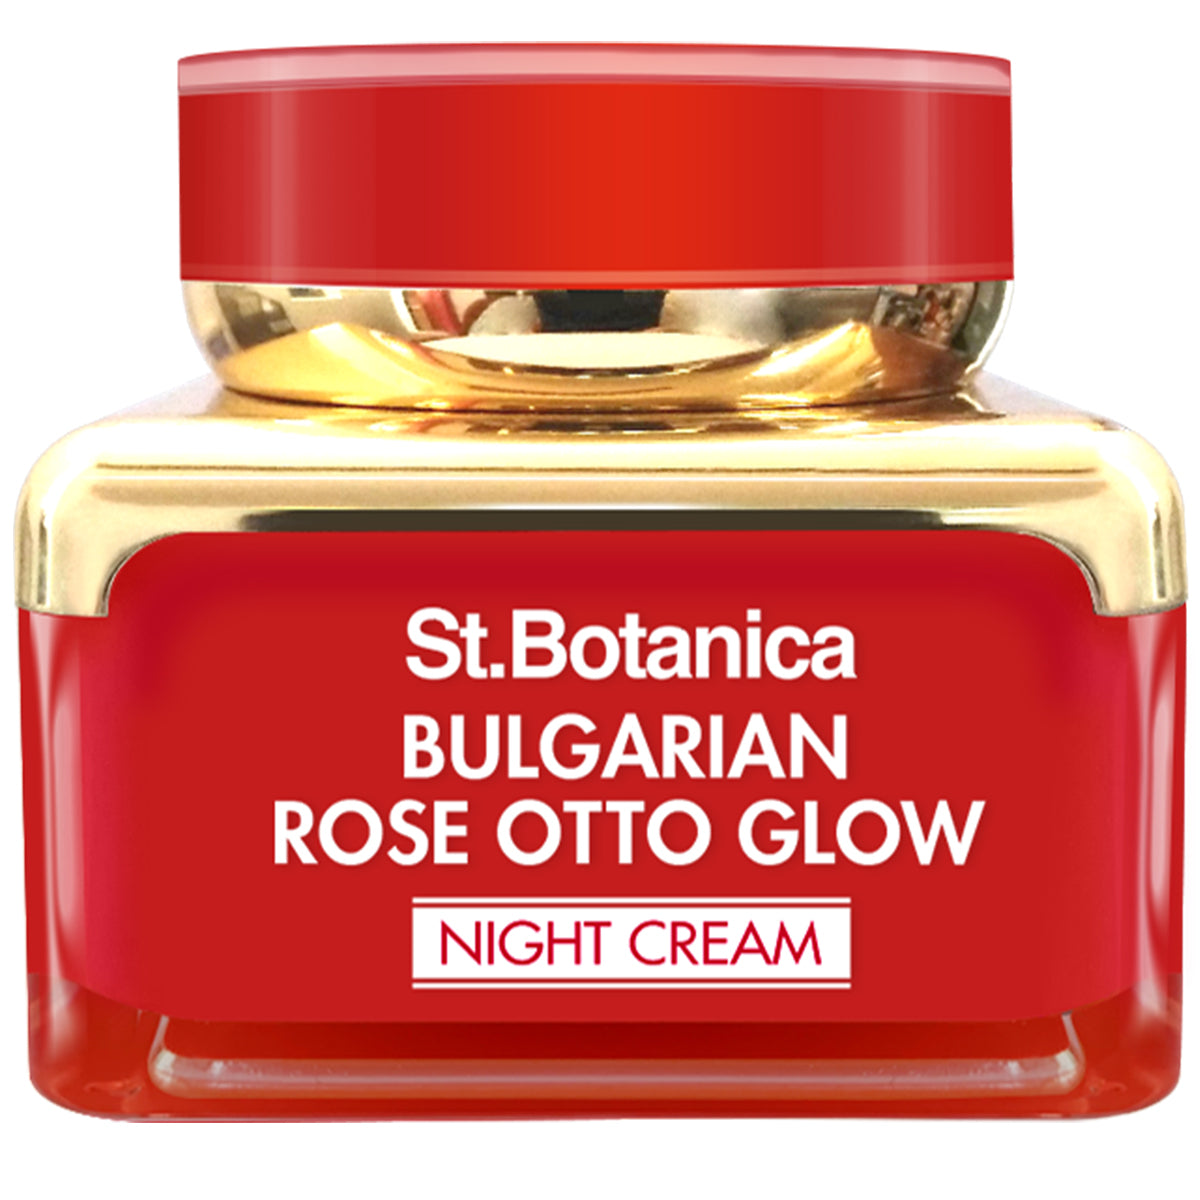 St.Botanica Bulgarian Rose Otto Glow Night Cream Brightening, Hydrating & Nourishing, 50 g (STBOT684)